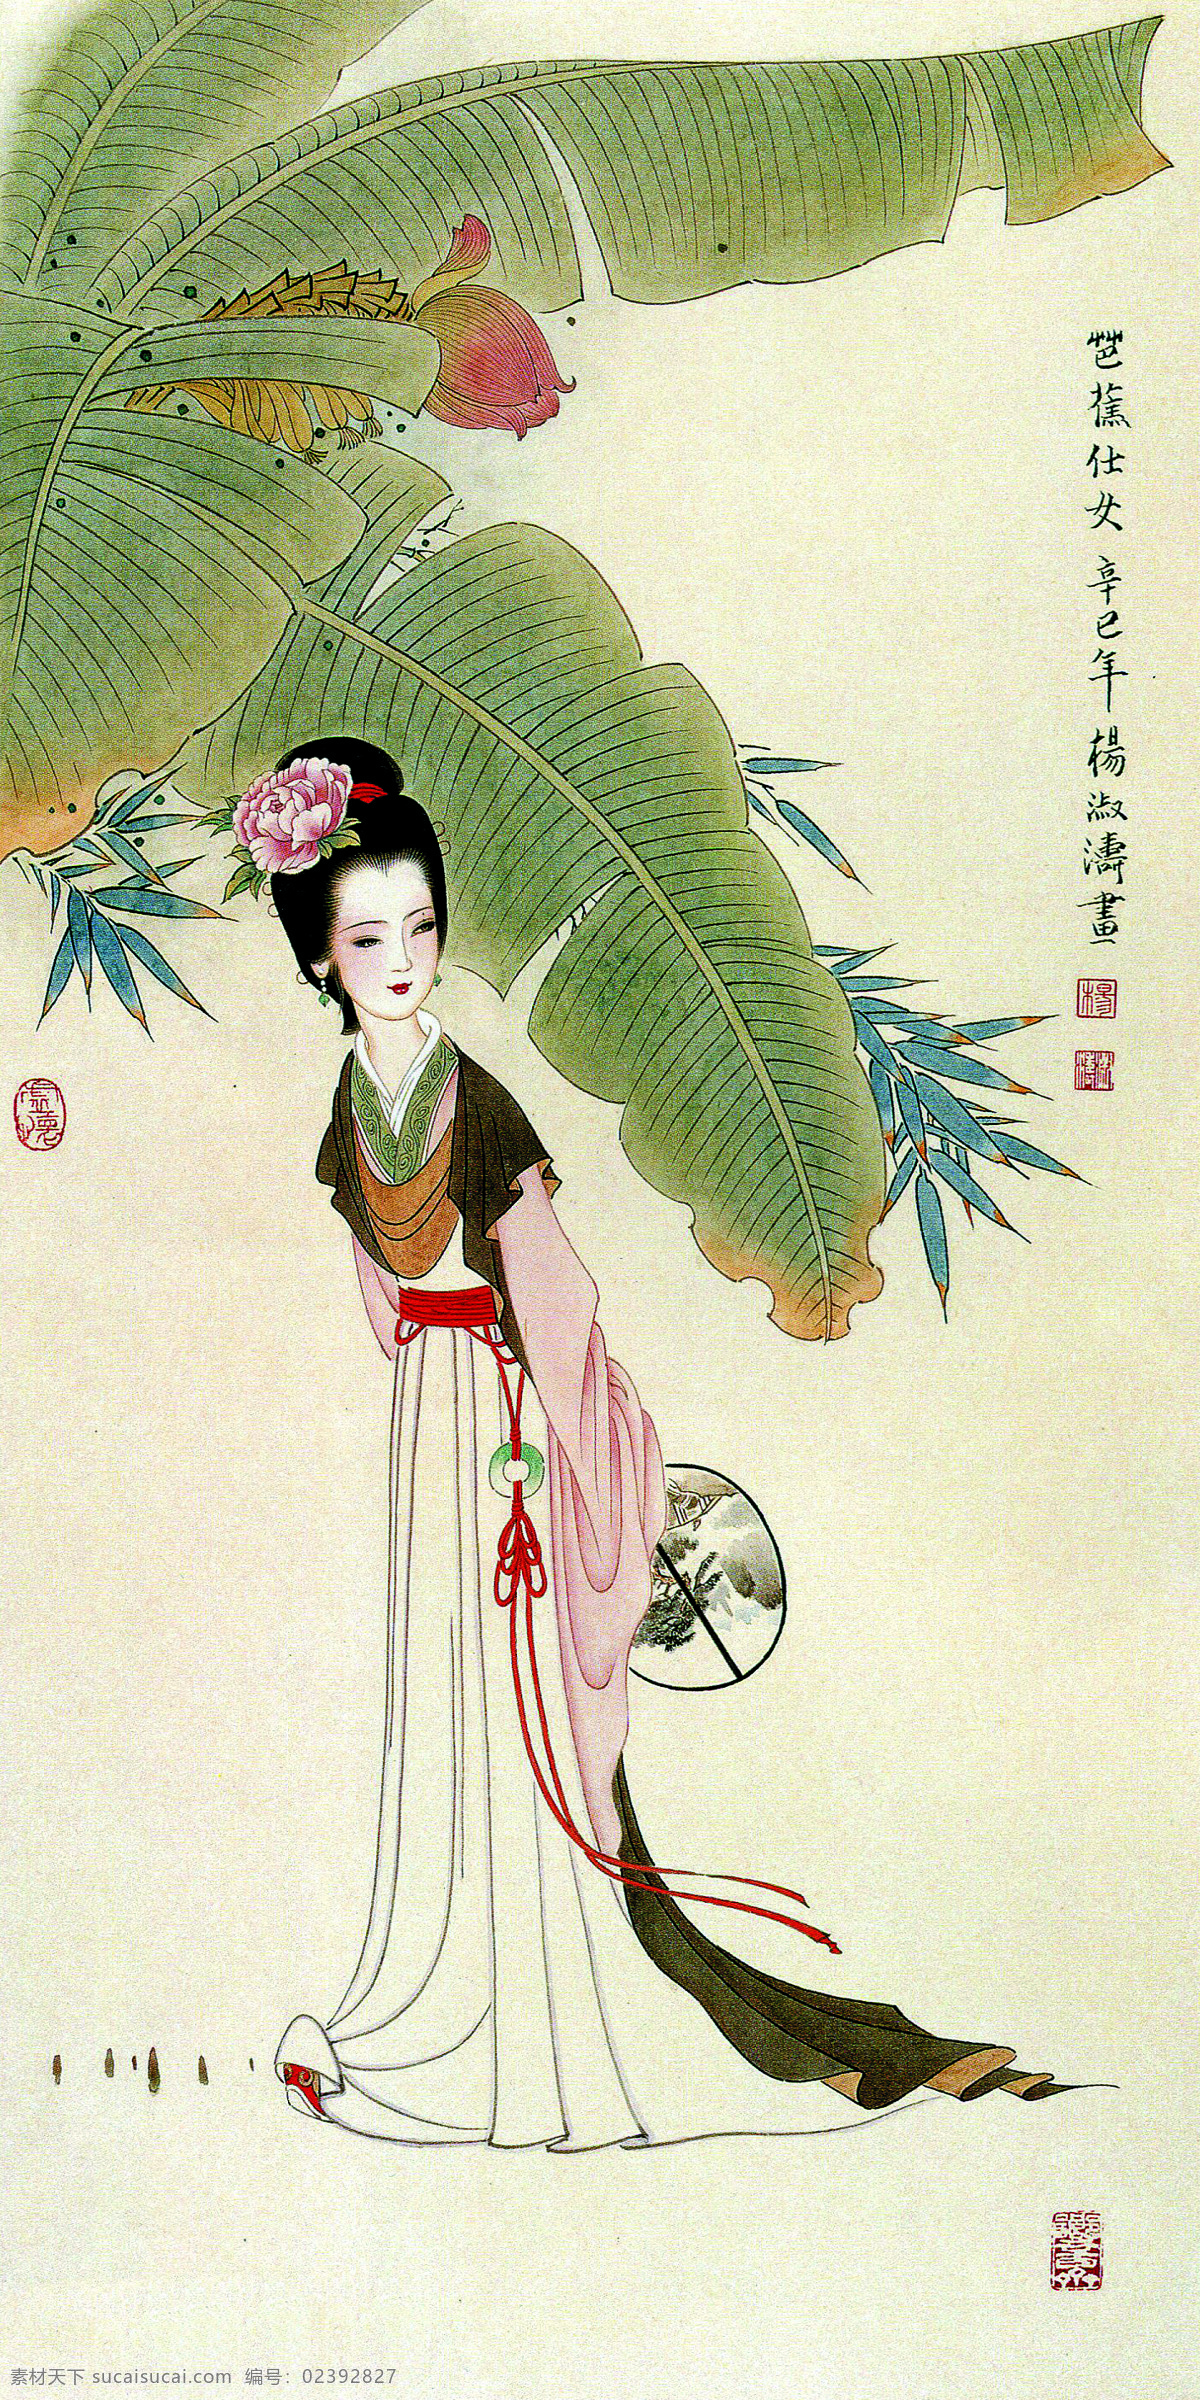 芭蕉仕女 美术 中国画 工笔画 女人 女子 仕女 丽人 芭蕉树 竹子 国画艺术 绘画书法 文化艺术